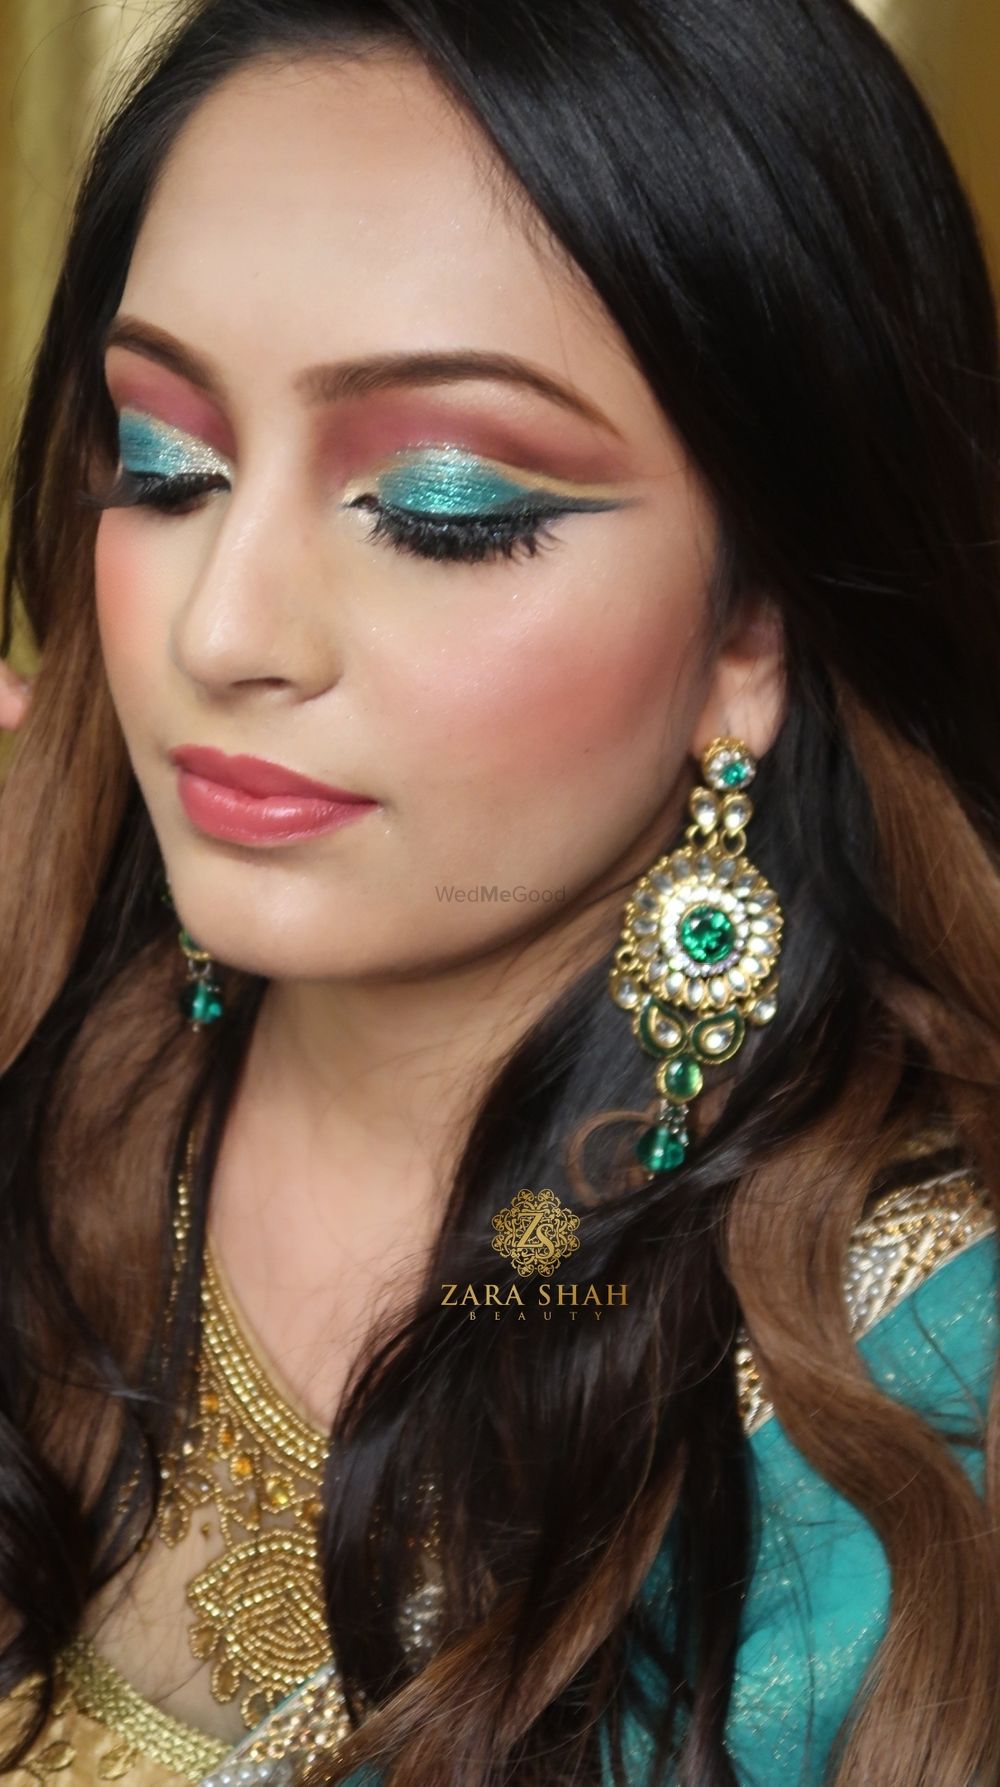 Photo From Saba - By Zara Shah Beauty